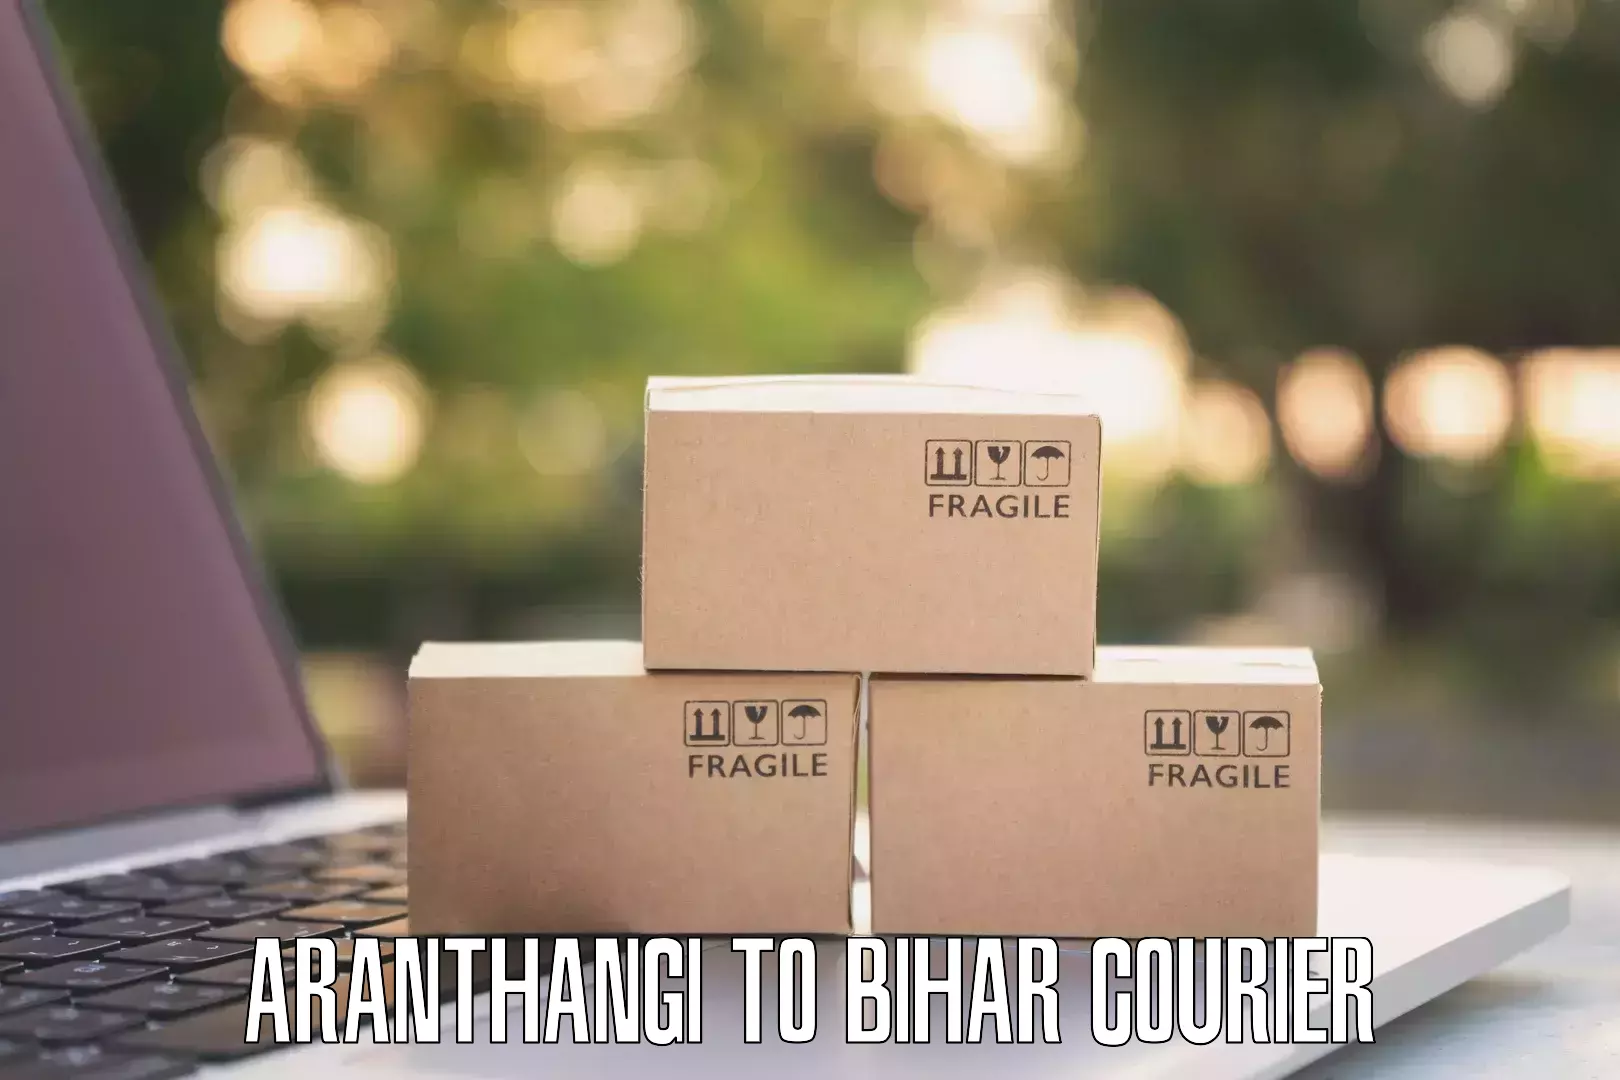 Efficient logistics management in Aranthangi to Tribeniganj